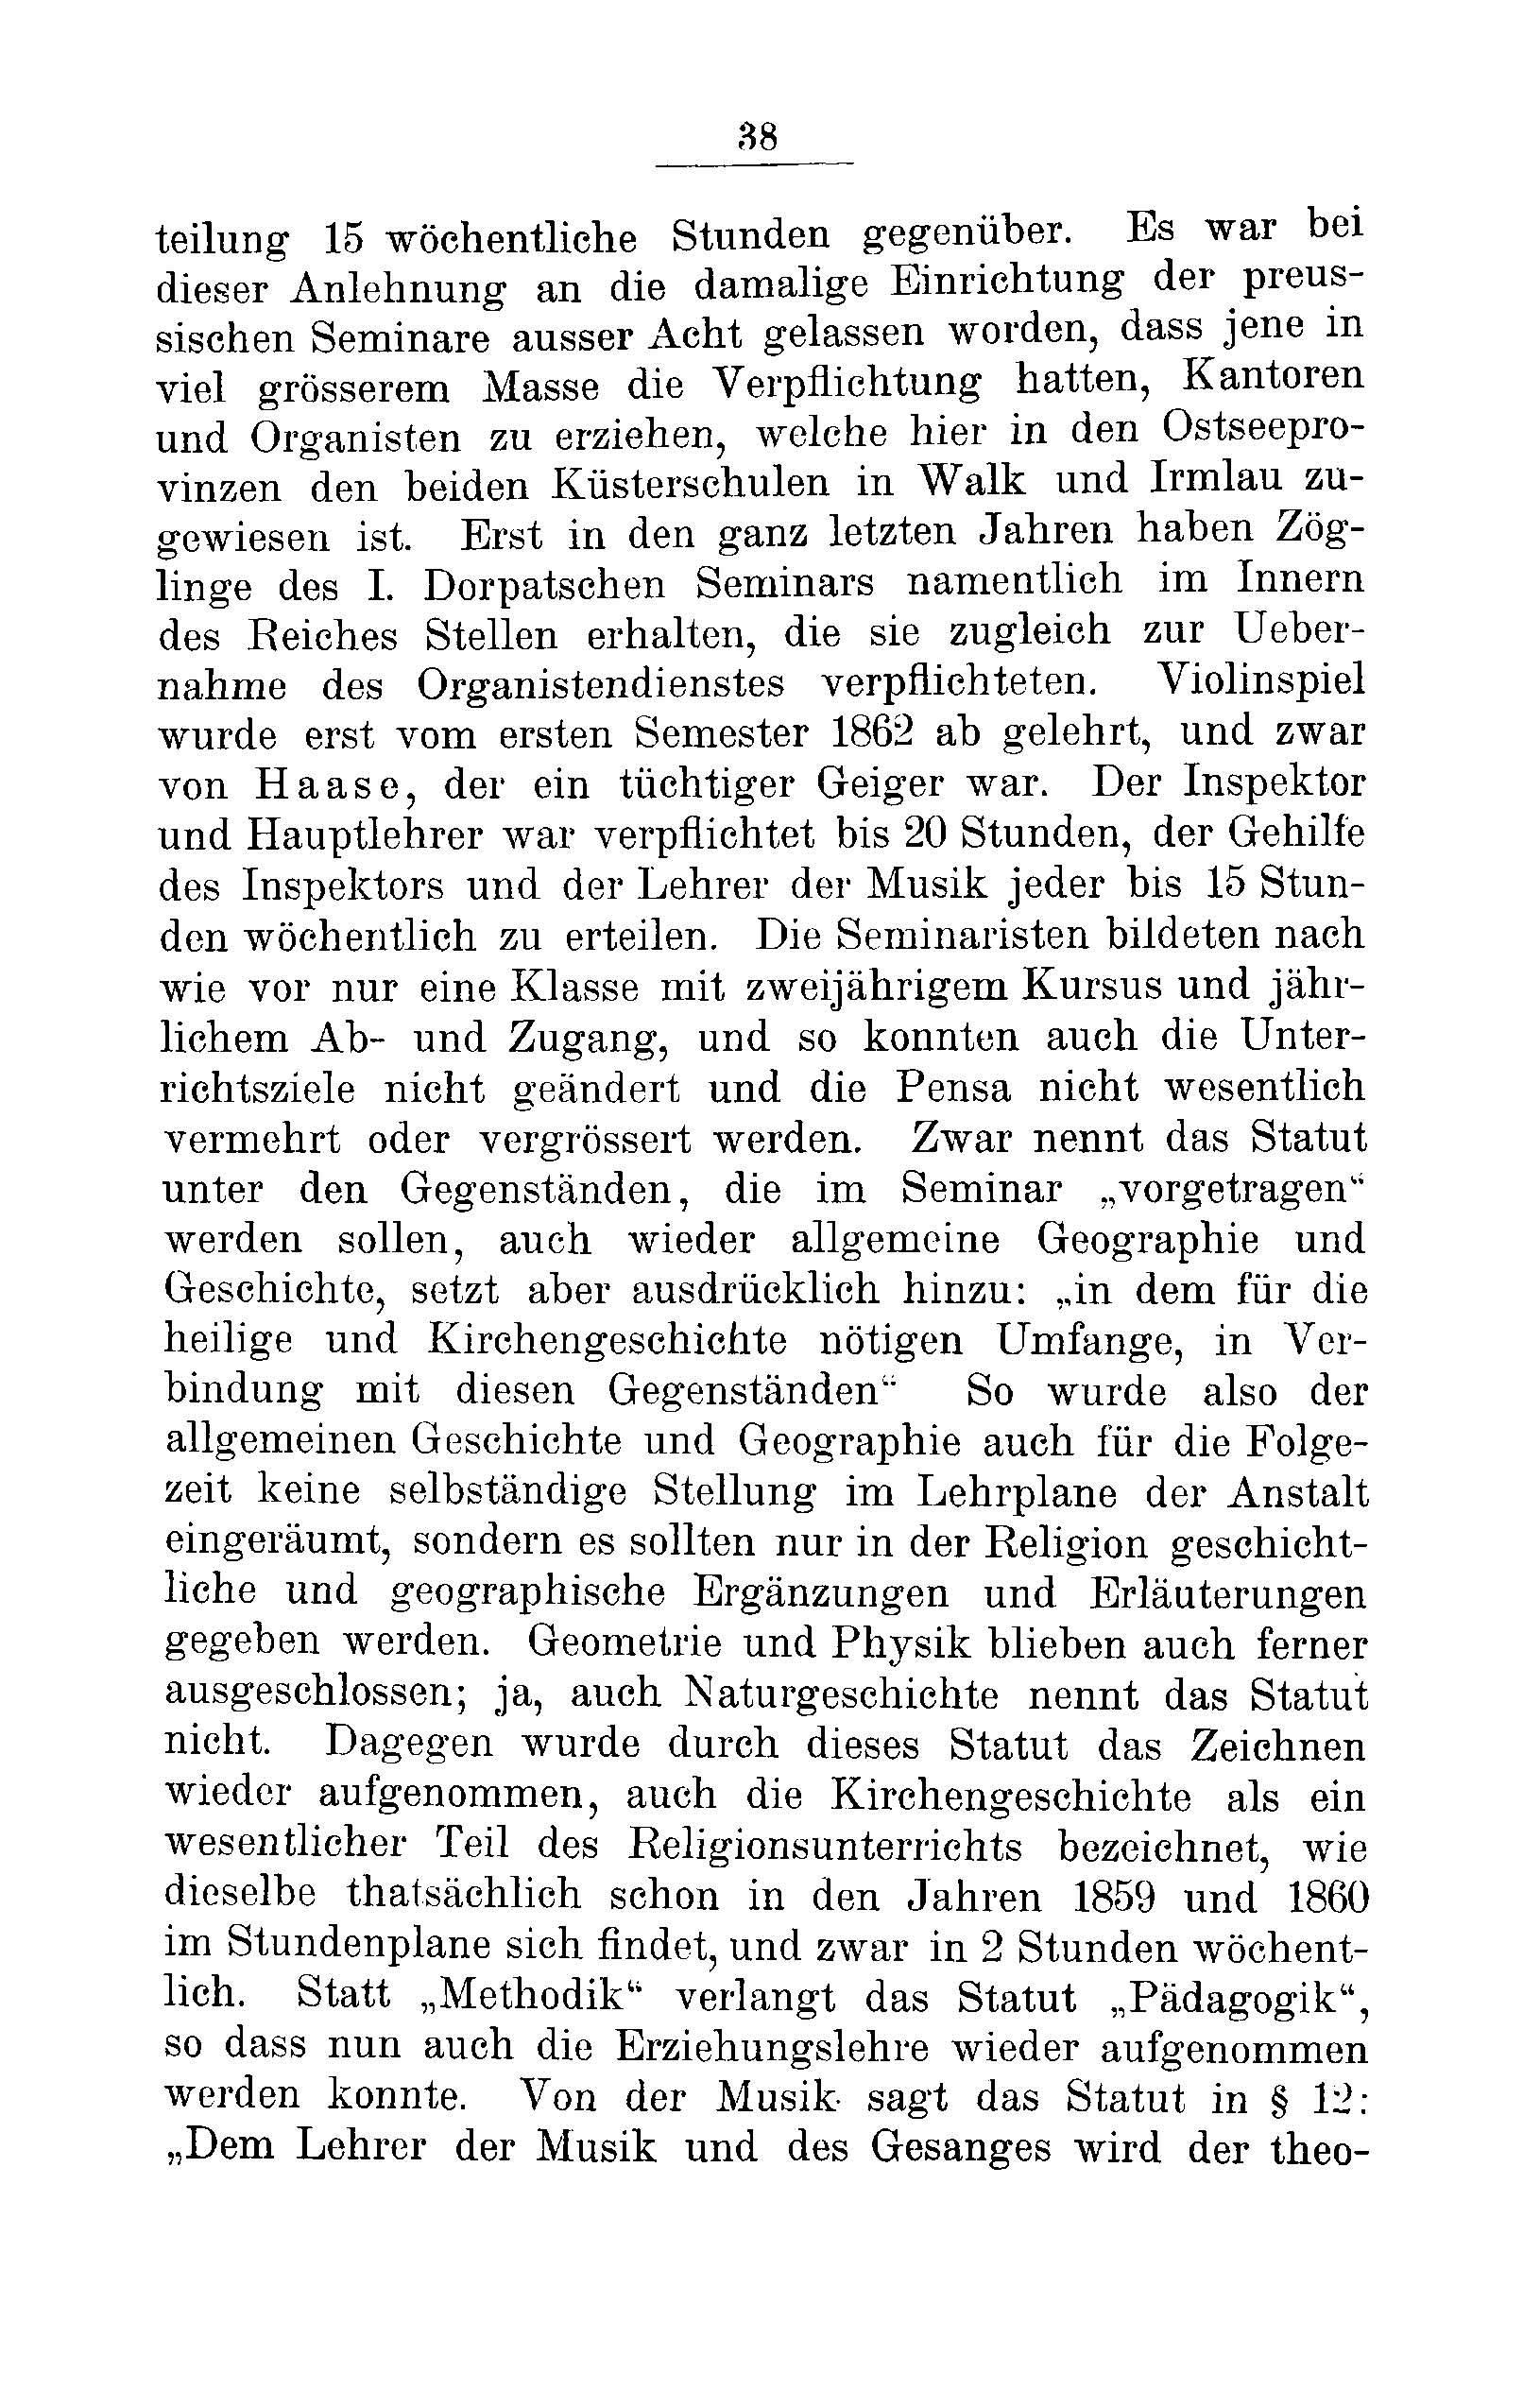 Das Erste Dorpatsche Lehrer-Seminar (1890) | 40. Main body of text